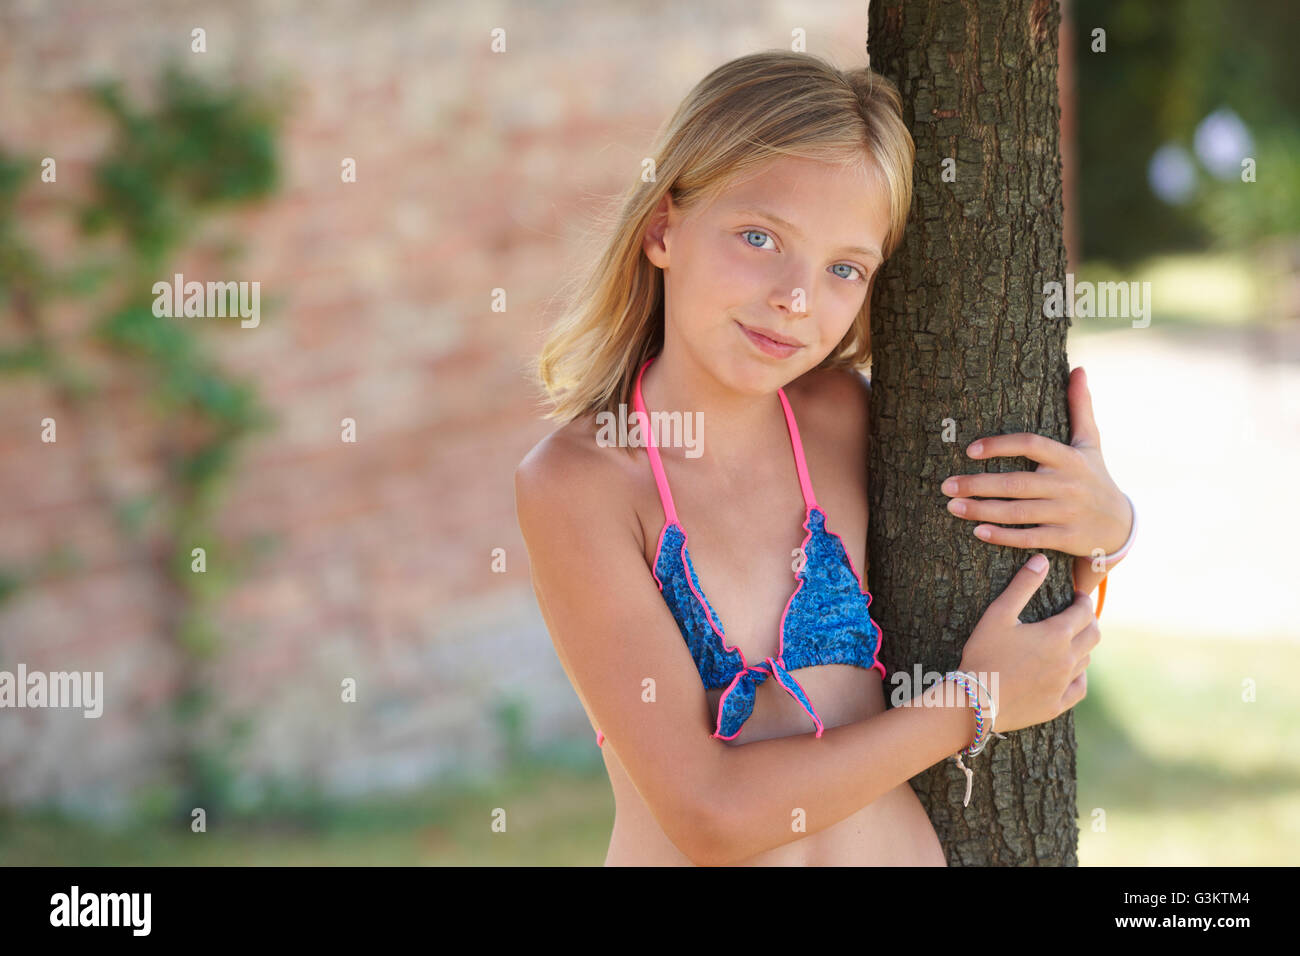 Retrato de chica que llevaba el bikini RECOSTADA contra el árbol, Buonconvento, Toscana, Italia Foto de stock